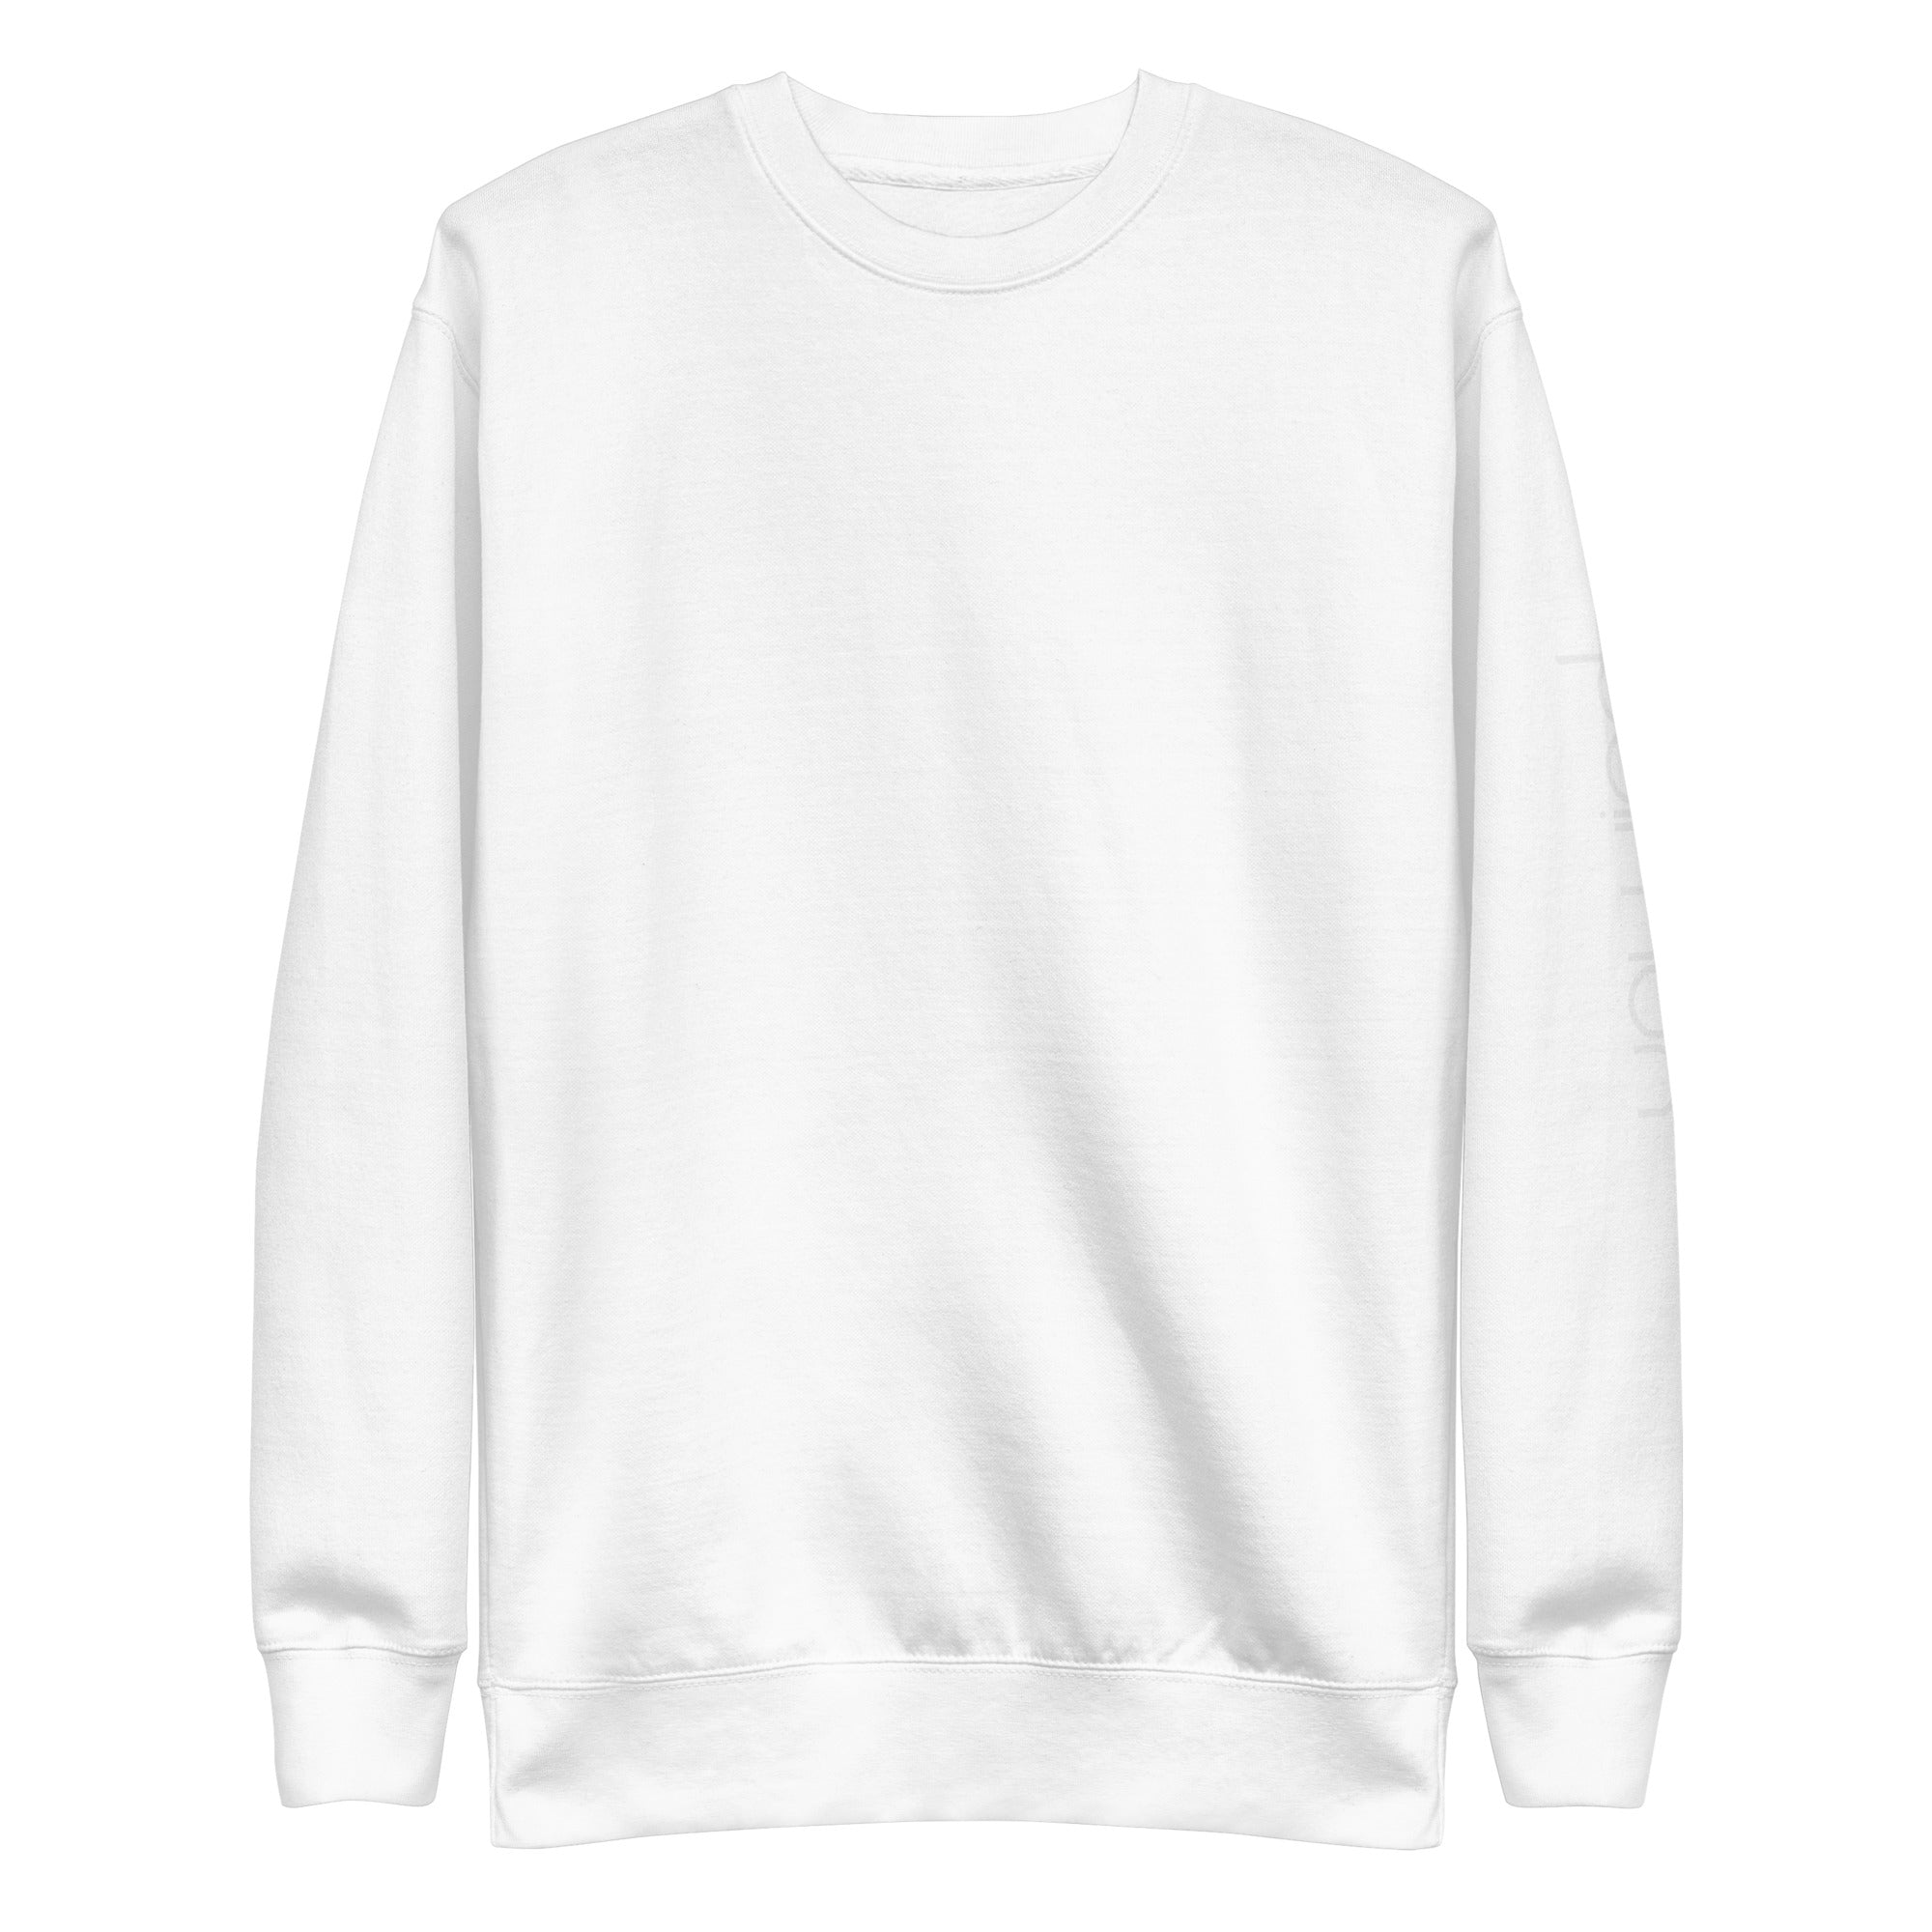 Unisex Premium Sweatshirt BRAINWASH or WEIRD